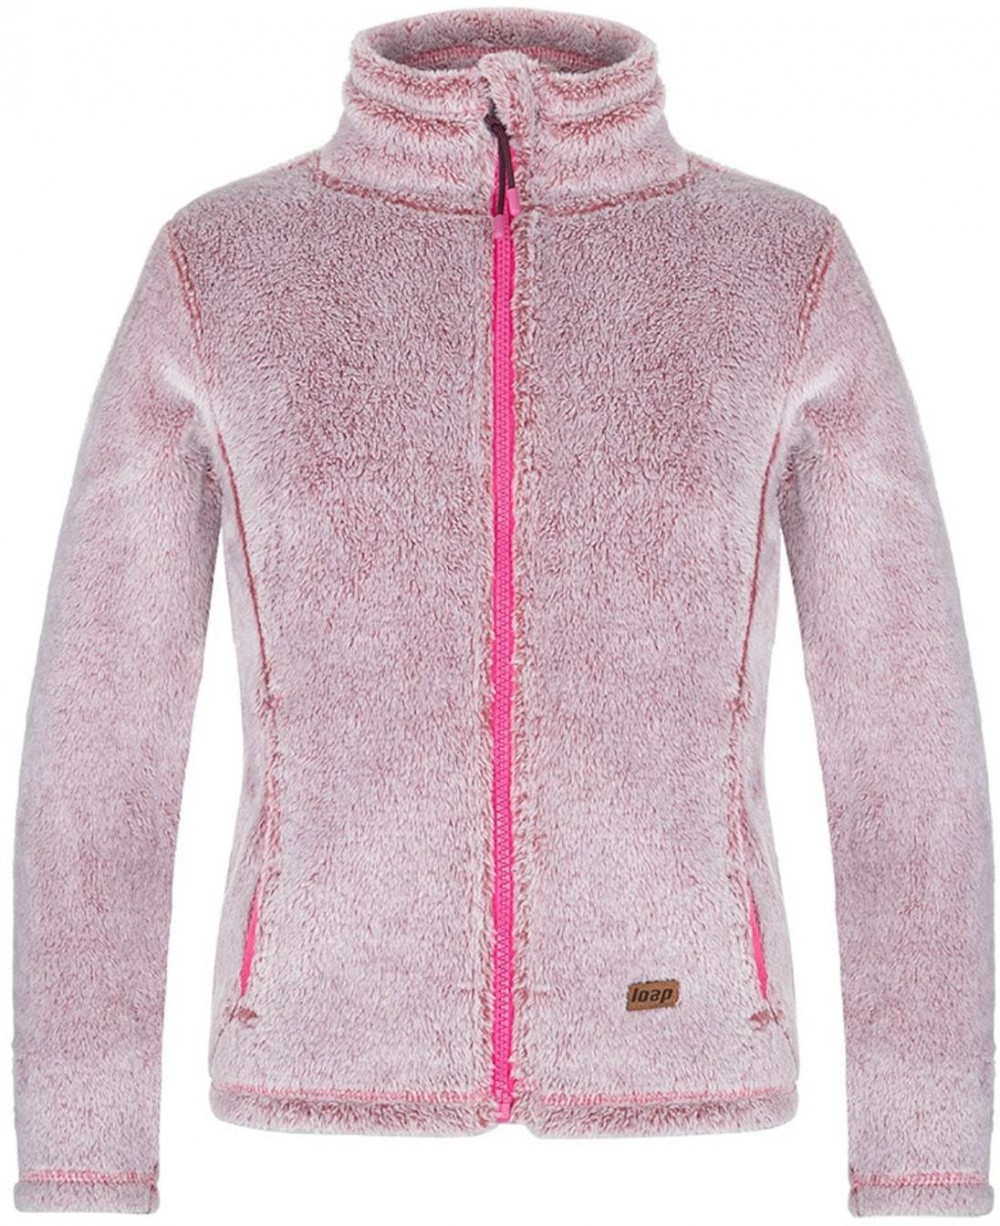 CHASCA children's fleece sweatshirt pink